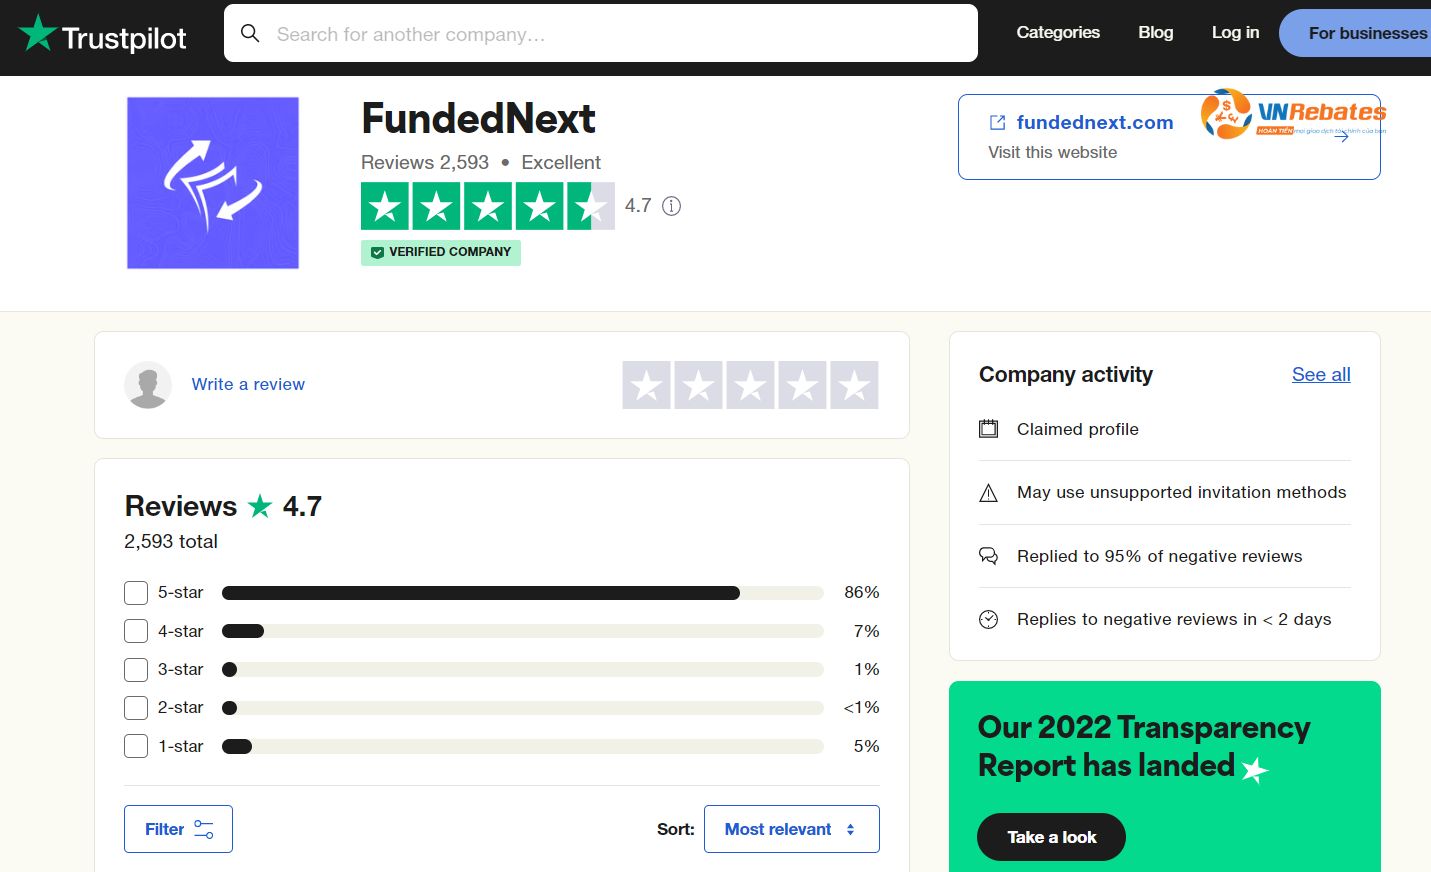 Quỹ Funded Next được cộng đồng người dùng đánh giá cao trên Trustpilot